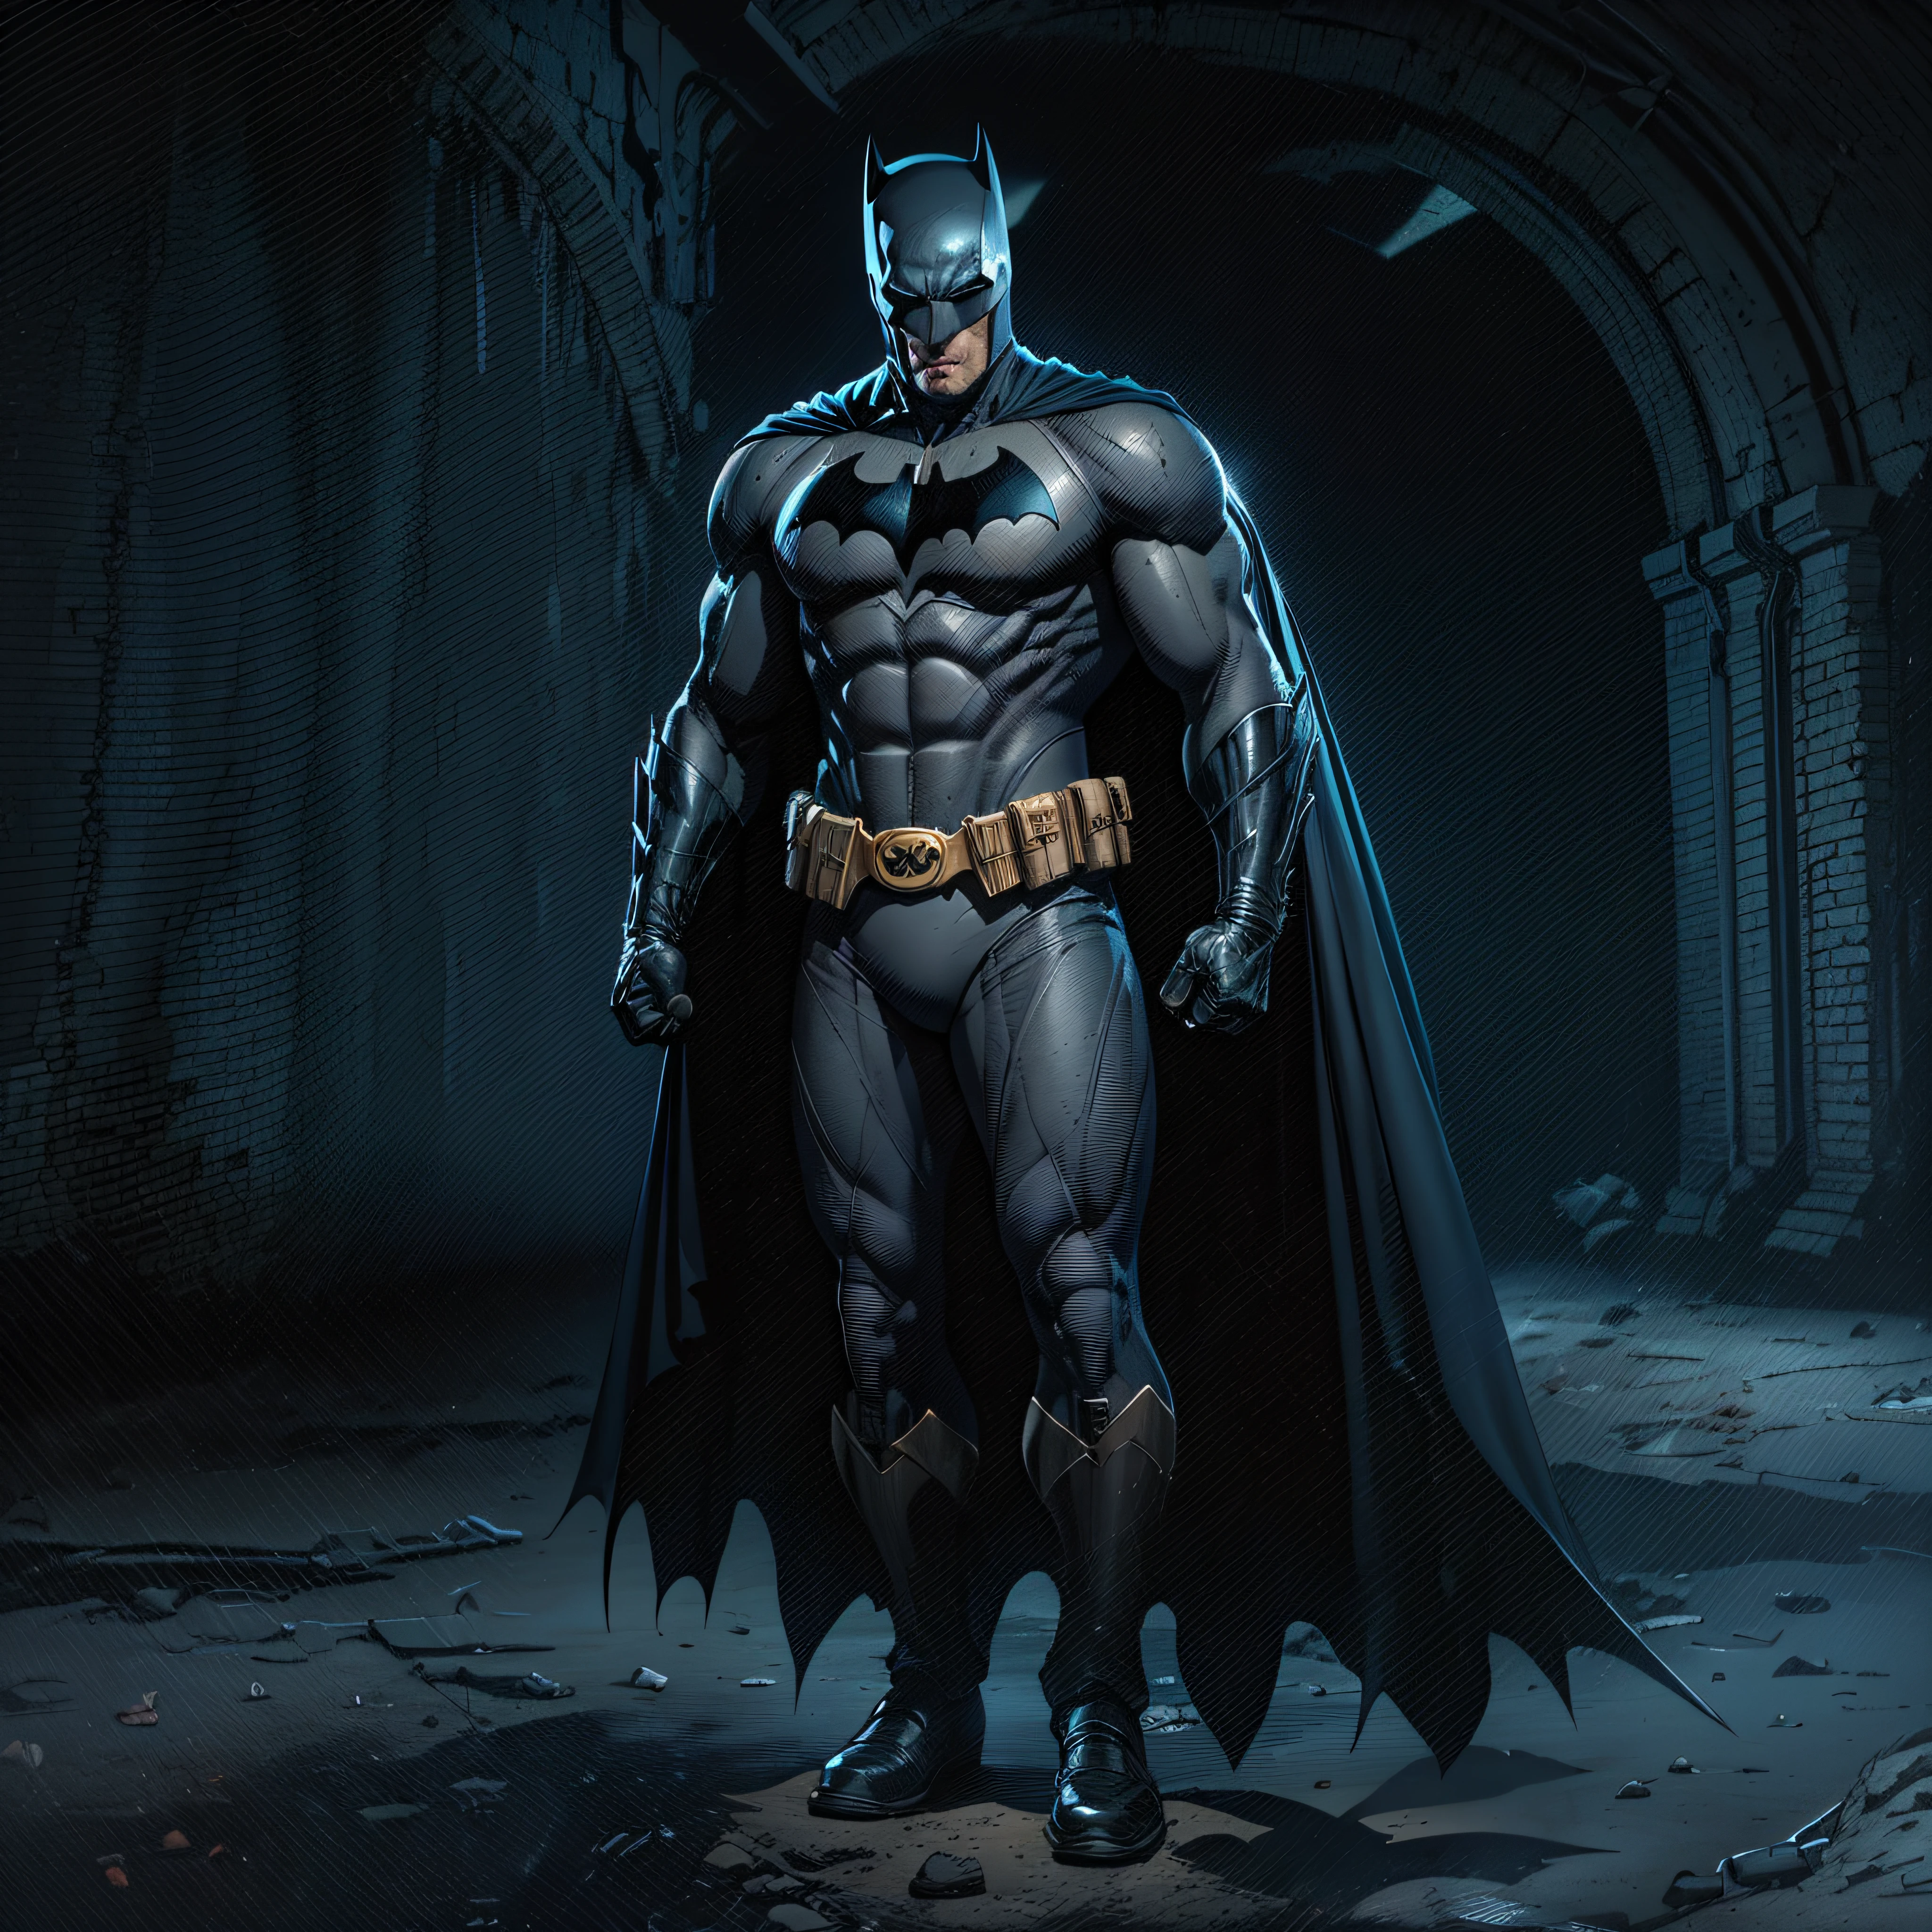 1 Mann, Allein, Ben Affleck as Batman, groß, hunk, muskulös, Schüttgut, breite Schulter, Fotorealismus, dunkelgrauer Anzug, dunkelgraue Arme, ((keine Maske)), Maske ab, Schwarzes Haar, schwarze Handschuhe, beste Qualität, Meisterwerk, hohe Auflösung:1.2, schwarzer Umhang, hochdetaillierte Maske, hochdetaillierter Anzug, hochdetailliertes Gesicht, preisgekrönt, Nachtzeit, eine dunkle Höhle im Hintergrund, drinnen, fotorealistisch, ultra-realistisch, octane render